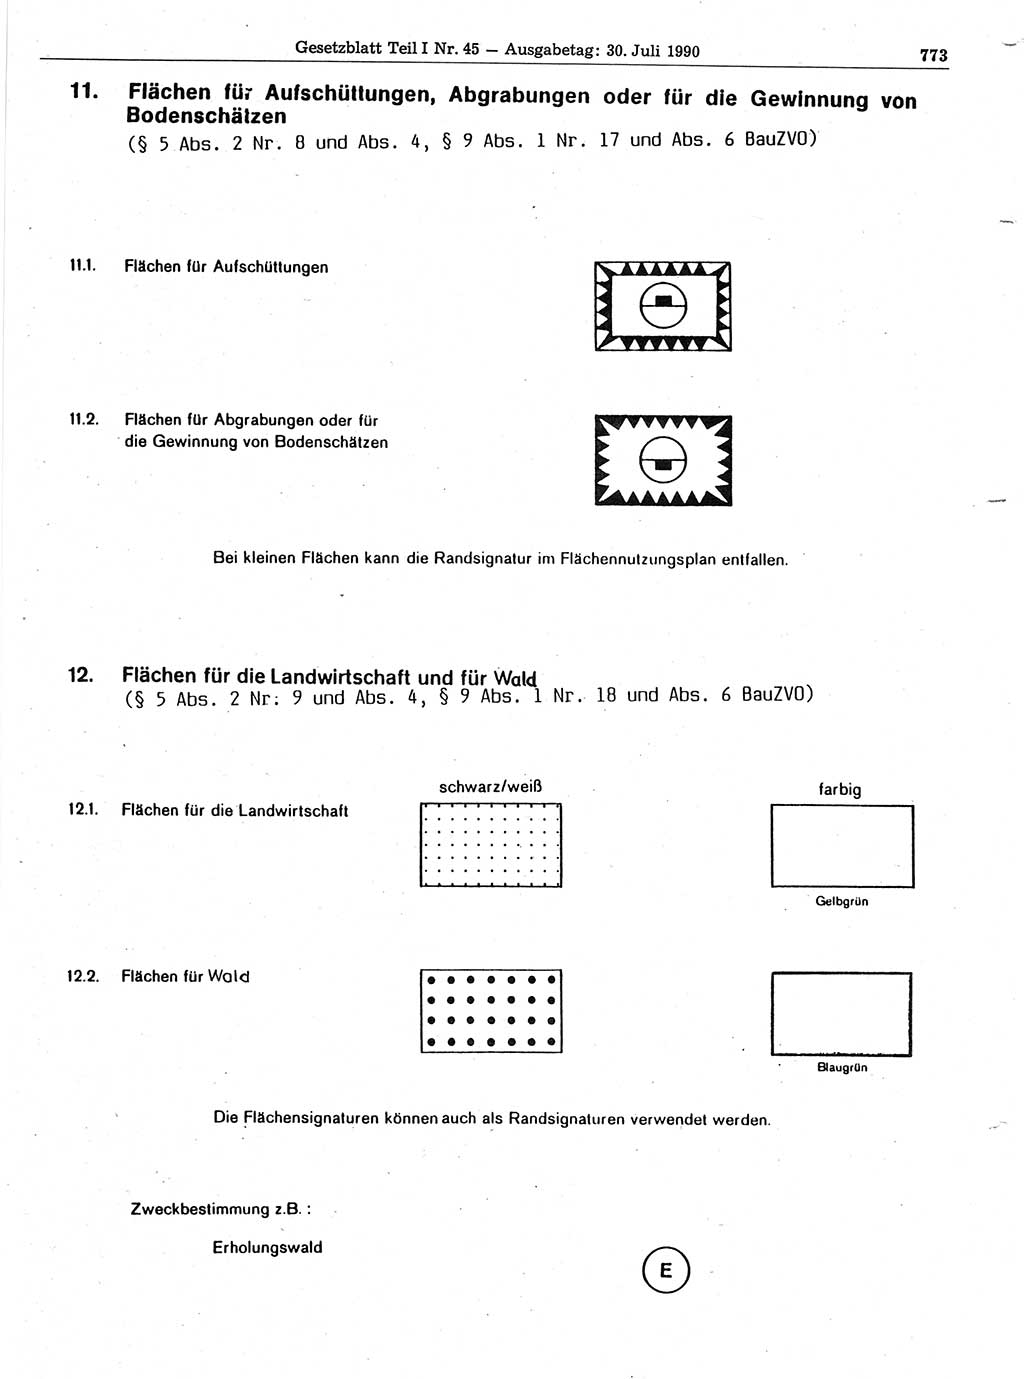 Gesetzblatt (GBl.) der Deutschen Demokratischen Republik (DDR) Teil Ⅰ 1990, Seite 773 (GBl. DDR Ⅰ 1990, S. 773)